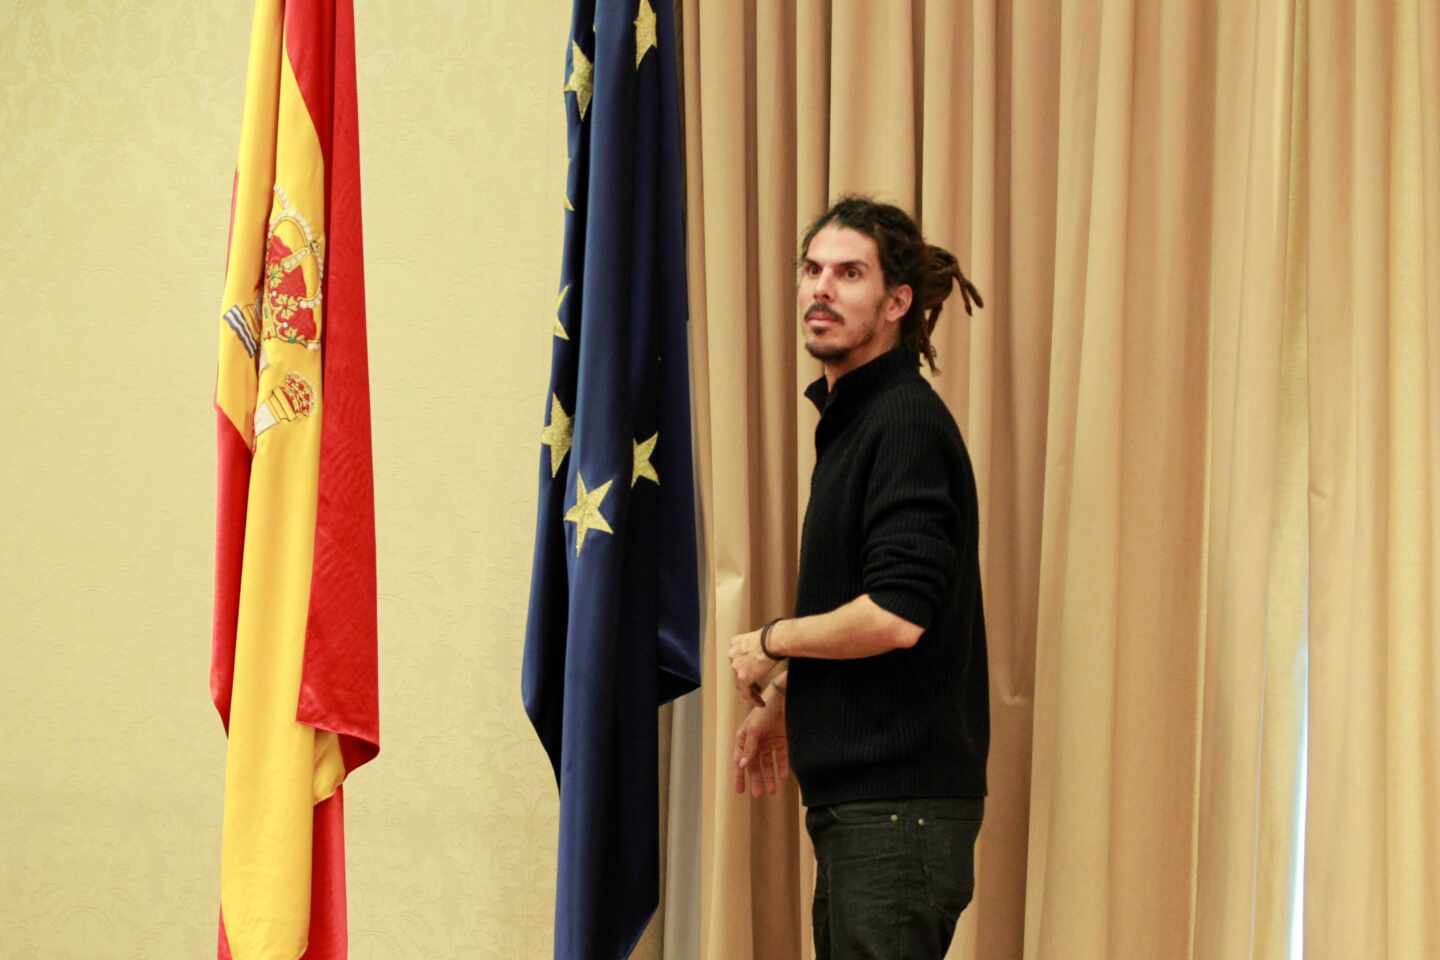 El Supremo cita a Alberto Rodríguez (Podemos) como investigado por atentado contra la autoridad